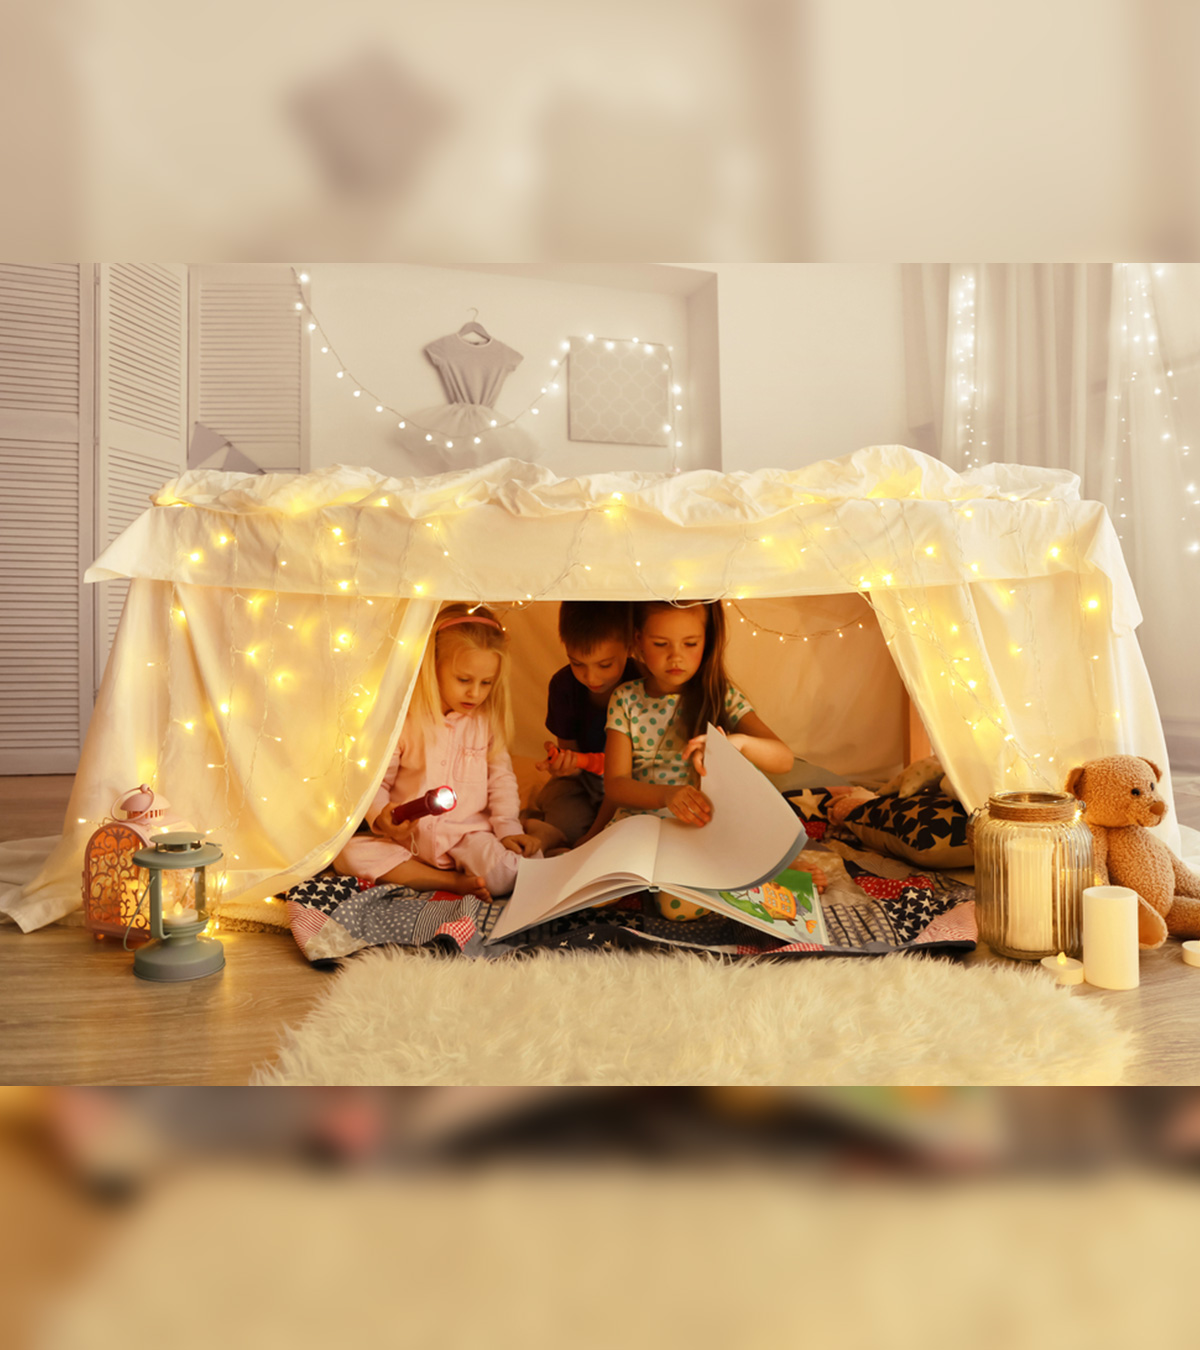 15+ Best DIY Indoor And Outdoor Fort Ideas For Kids 